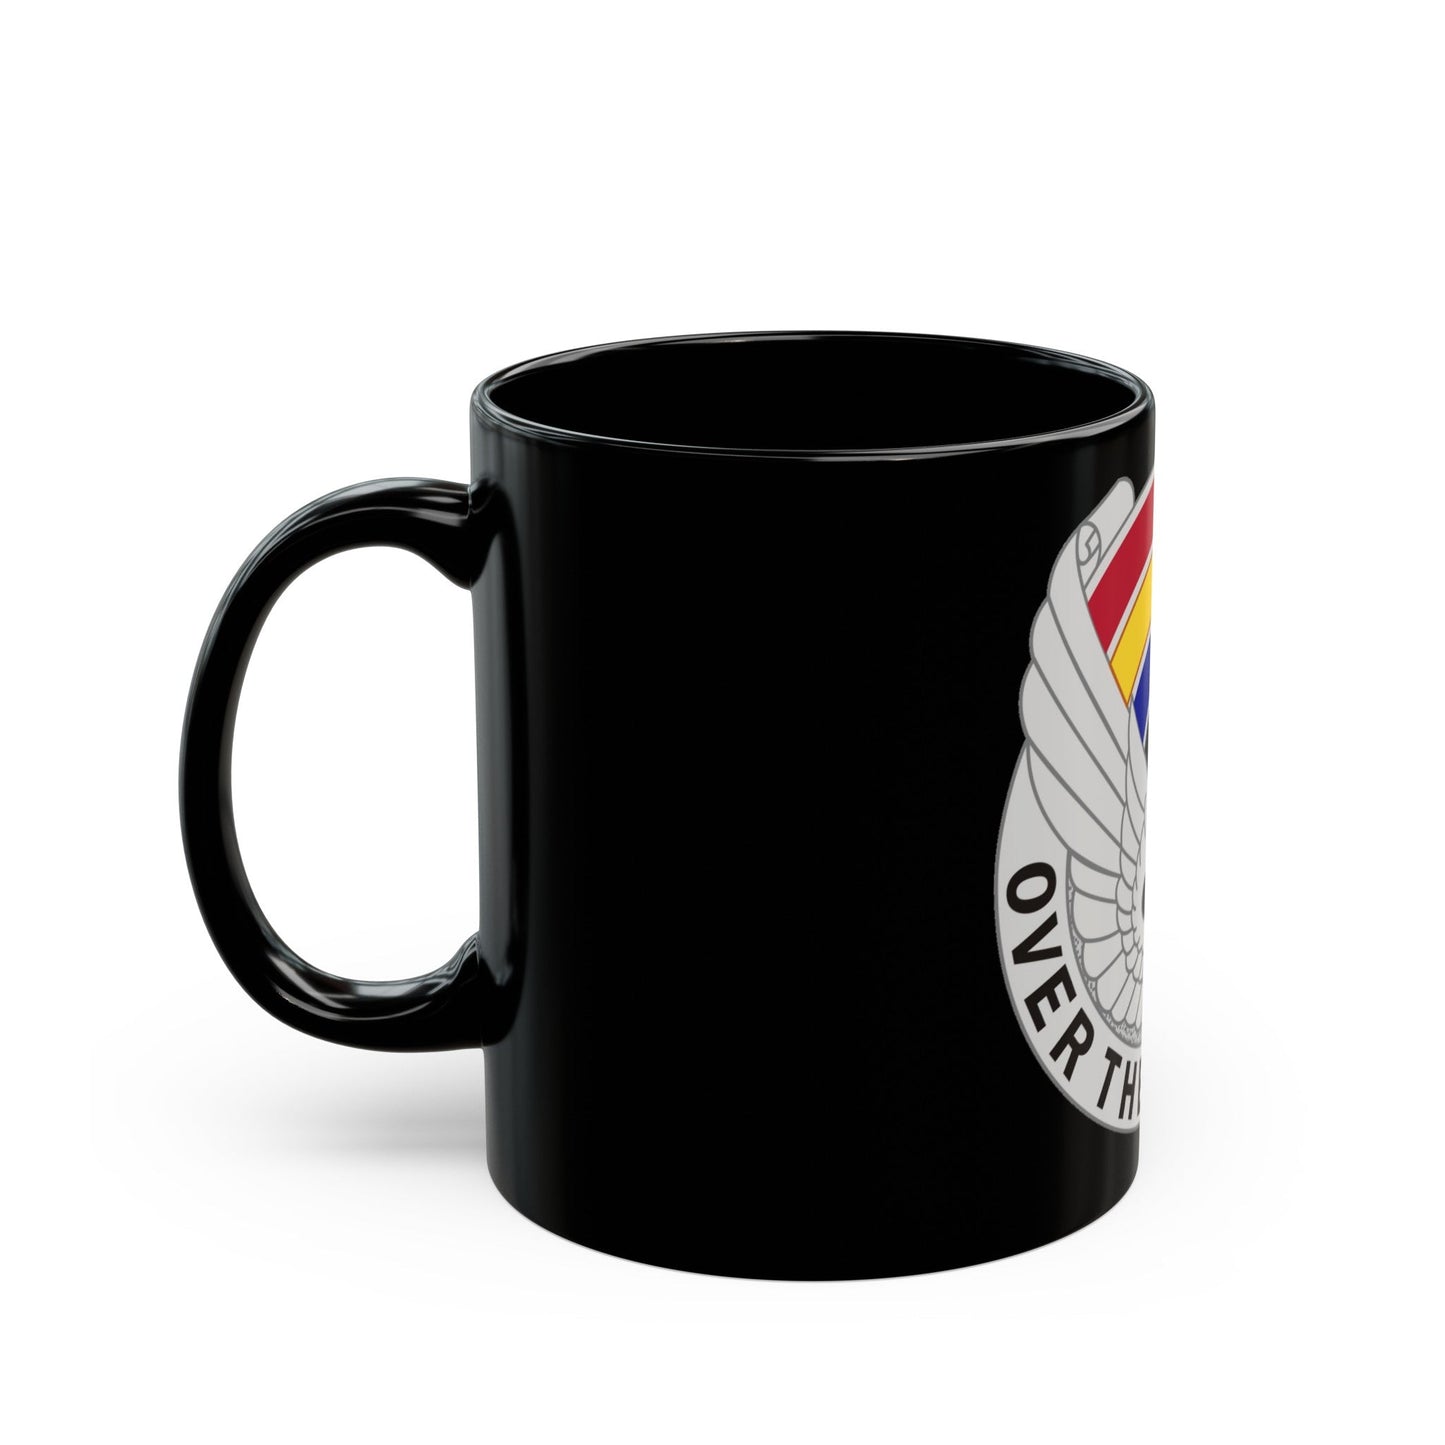 142 Aviation Regiment (U.S. Army) Black Coffee Mug